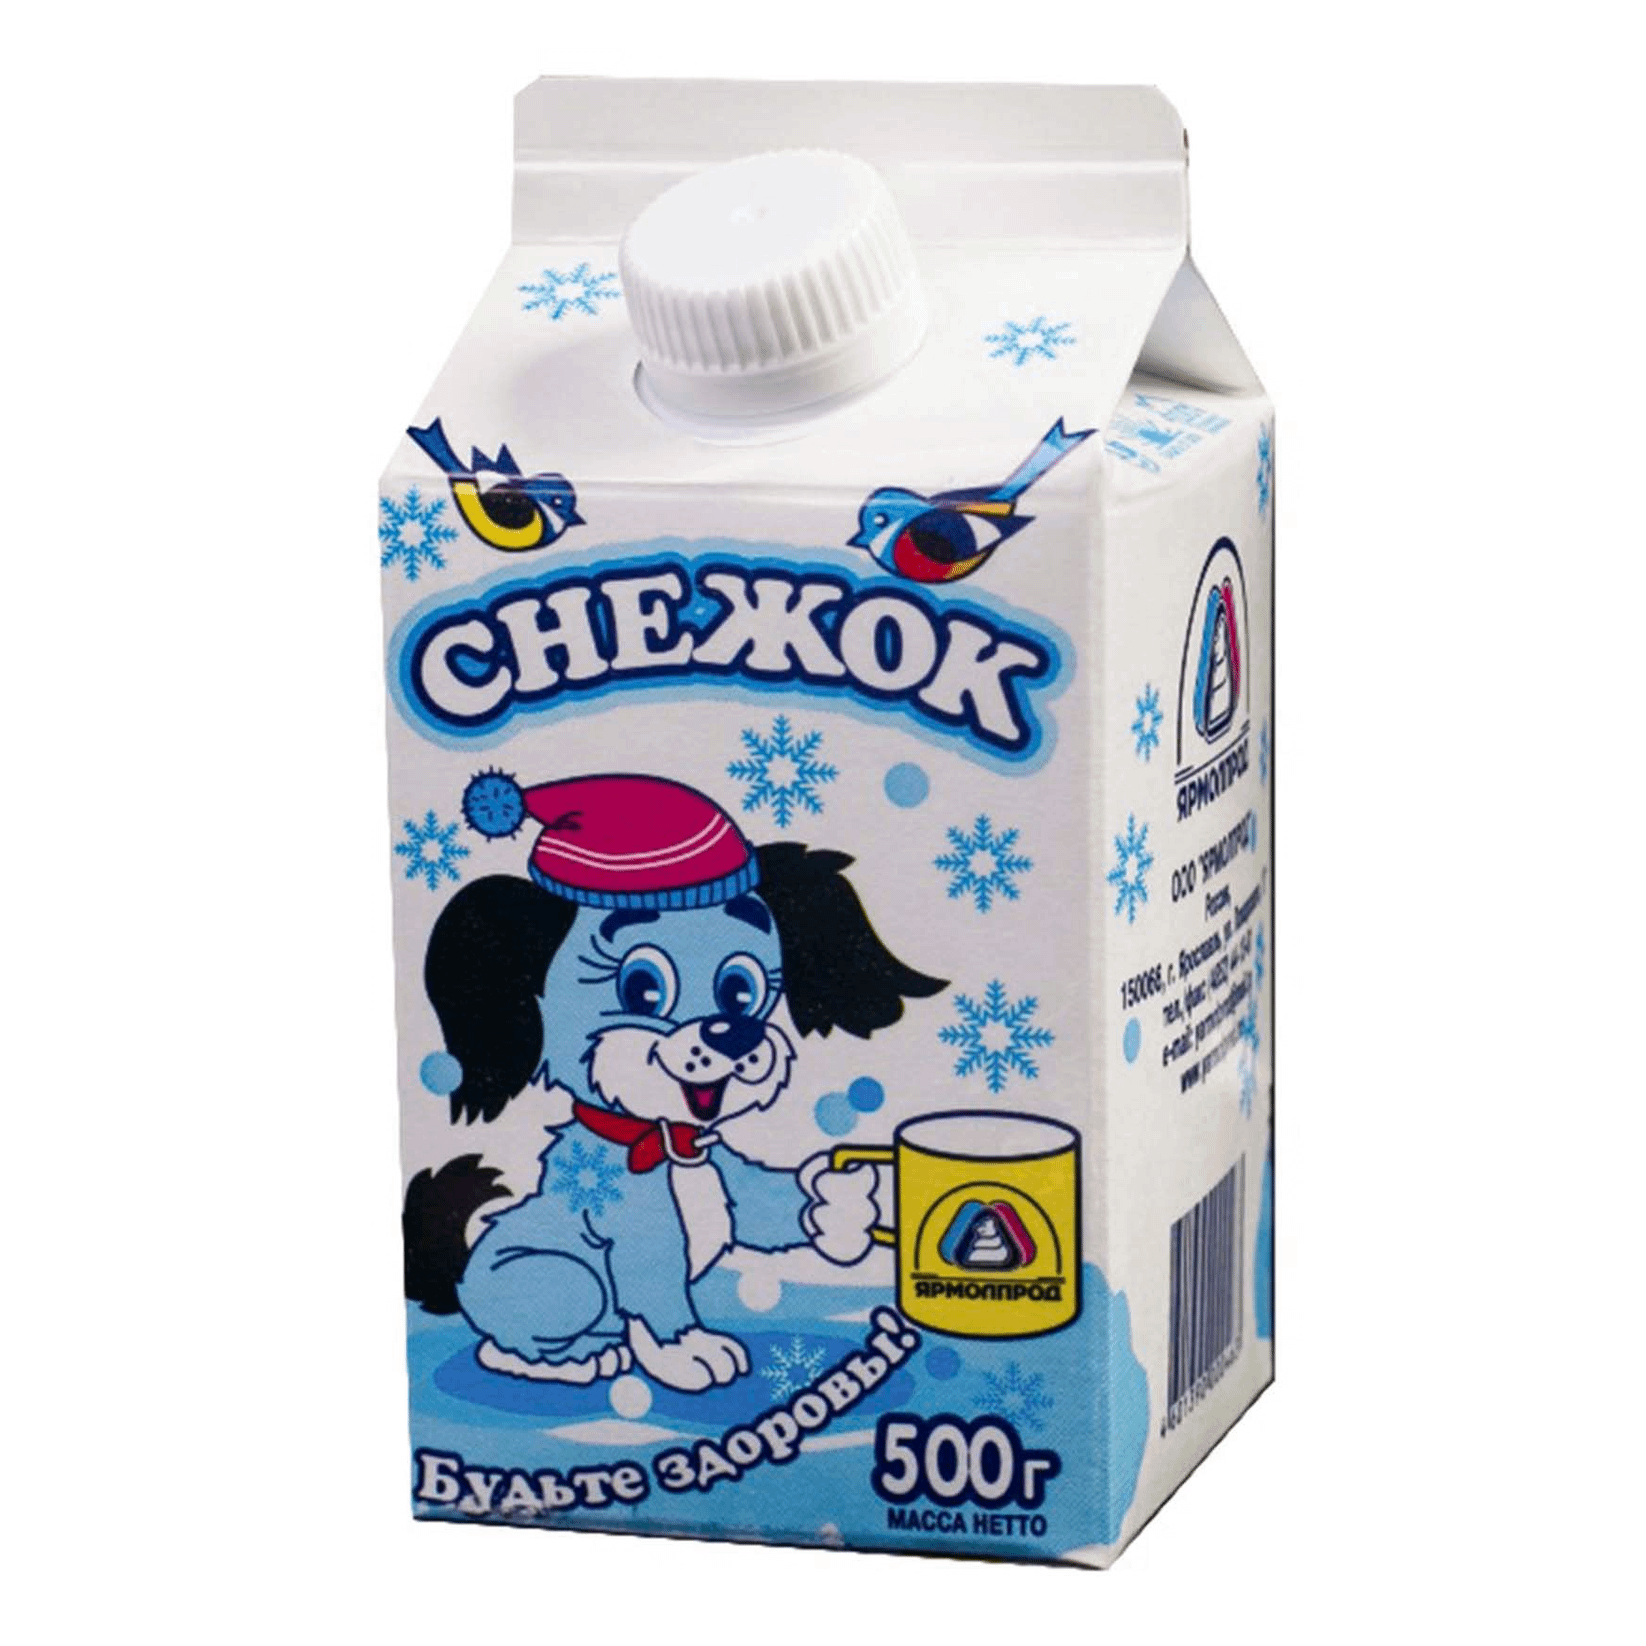 Снежок второй. Снежок Ярмолпрод. Снежок 2,5. Ярмолпрод напиток.снежок 2,5% йогурт.500г. Снежок молочный продукт.